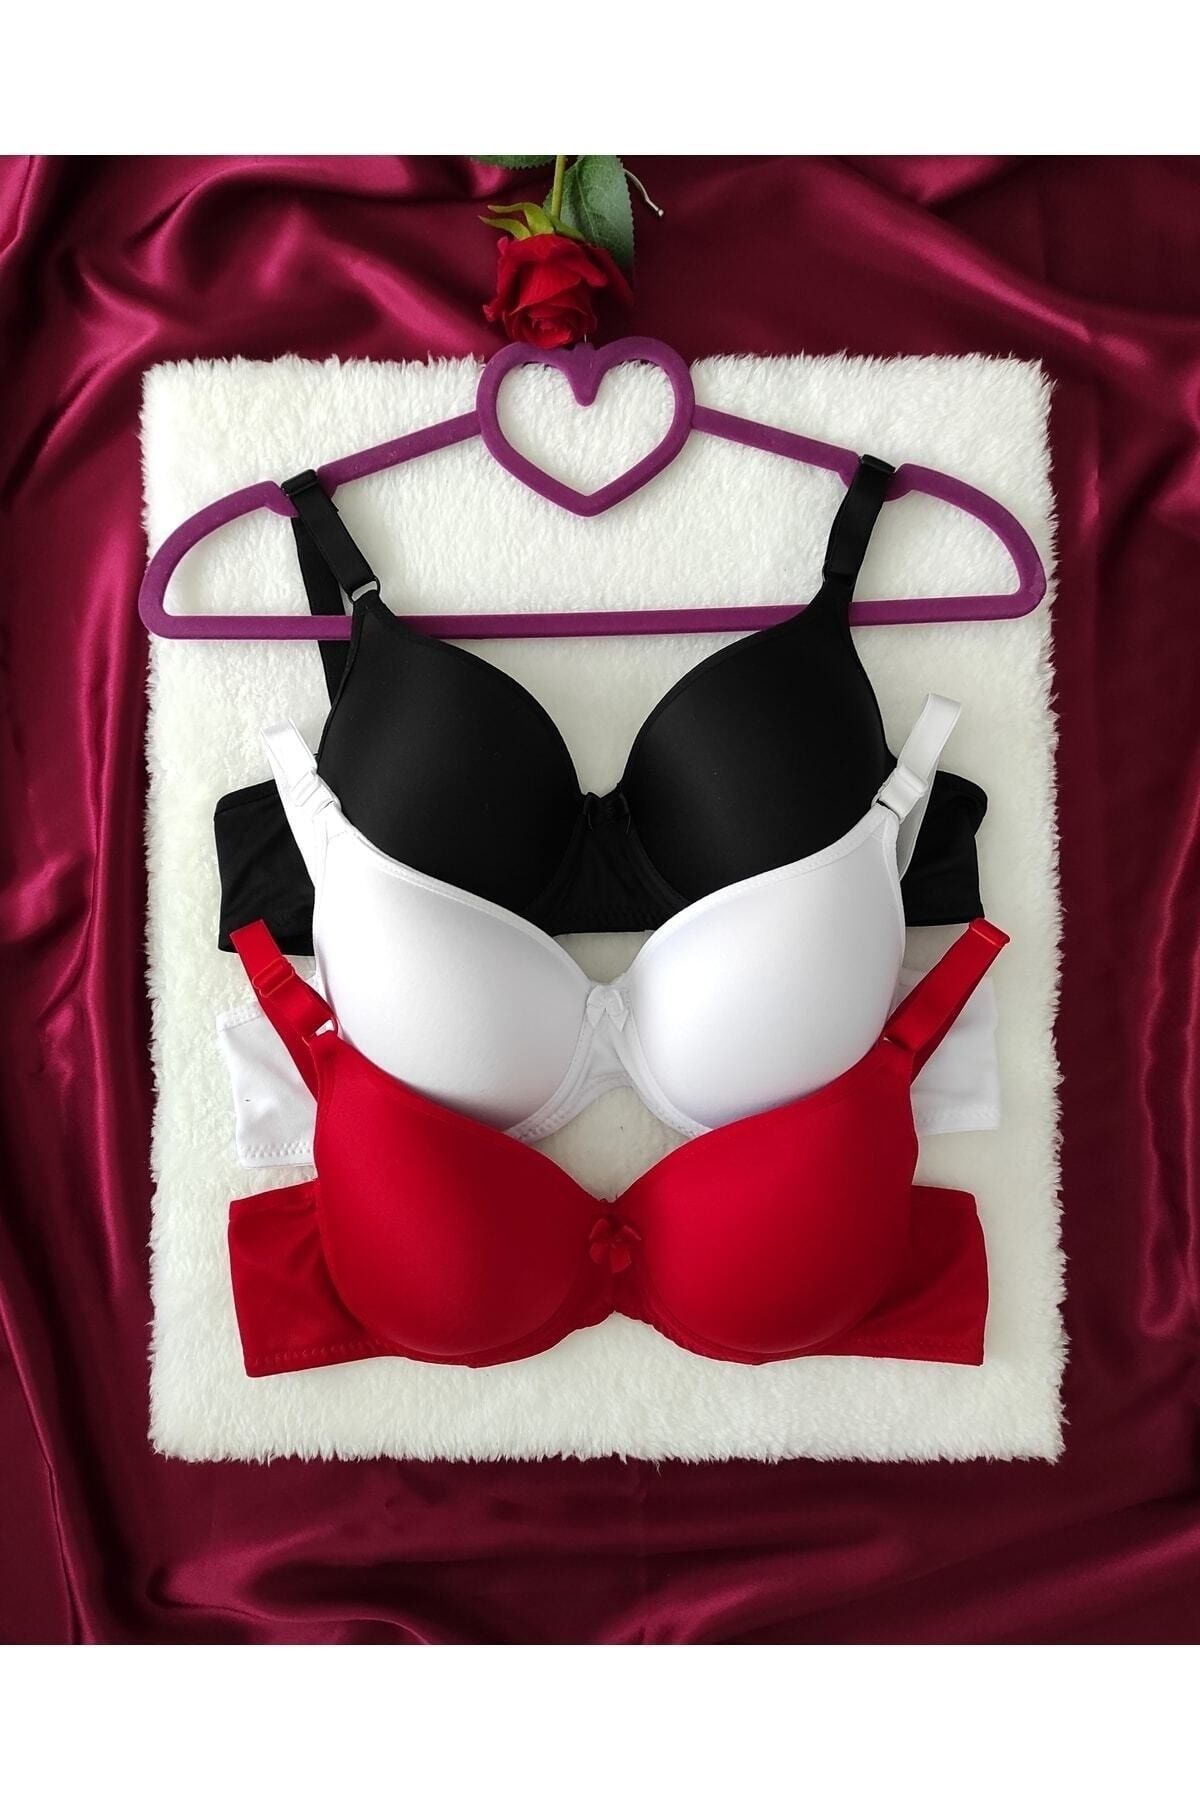 HTN LİNGERİE Women's Red Lace Padded Bra Panties Underwear Set - Trendyol